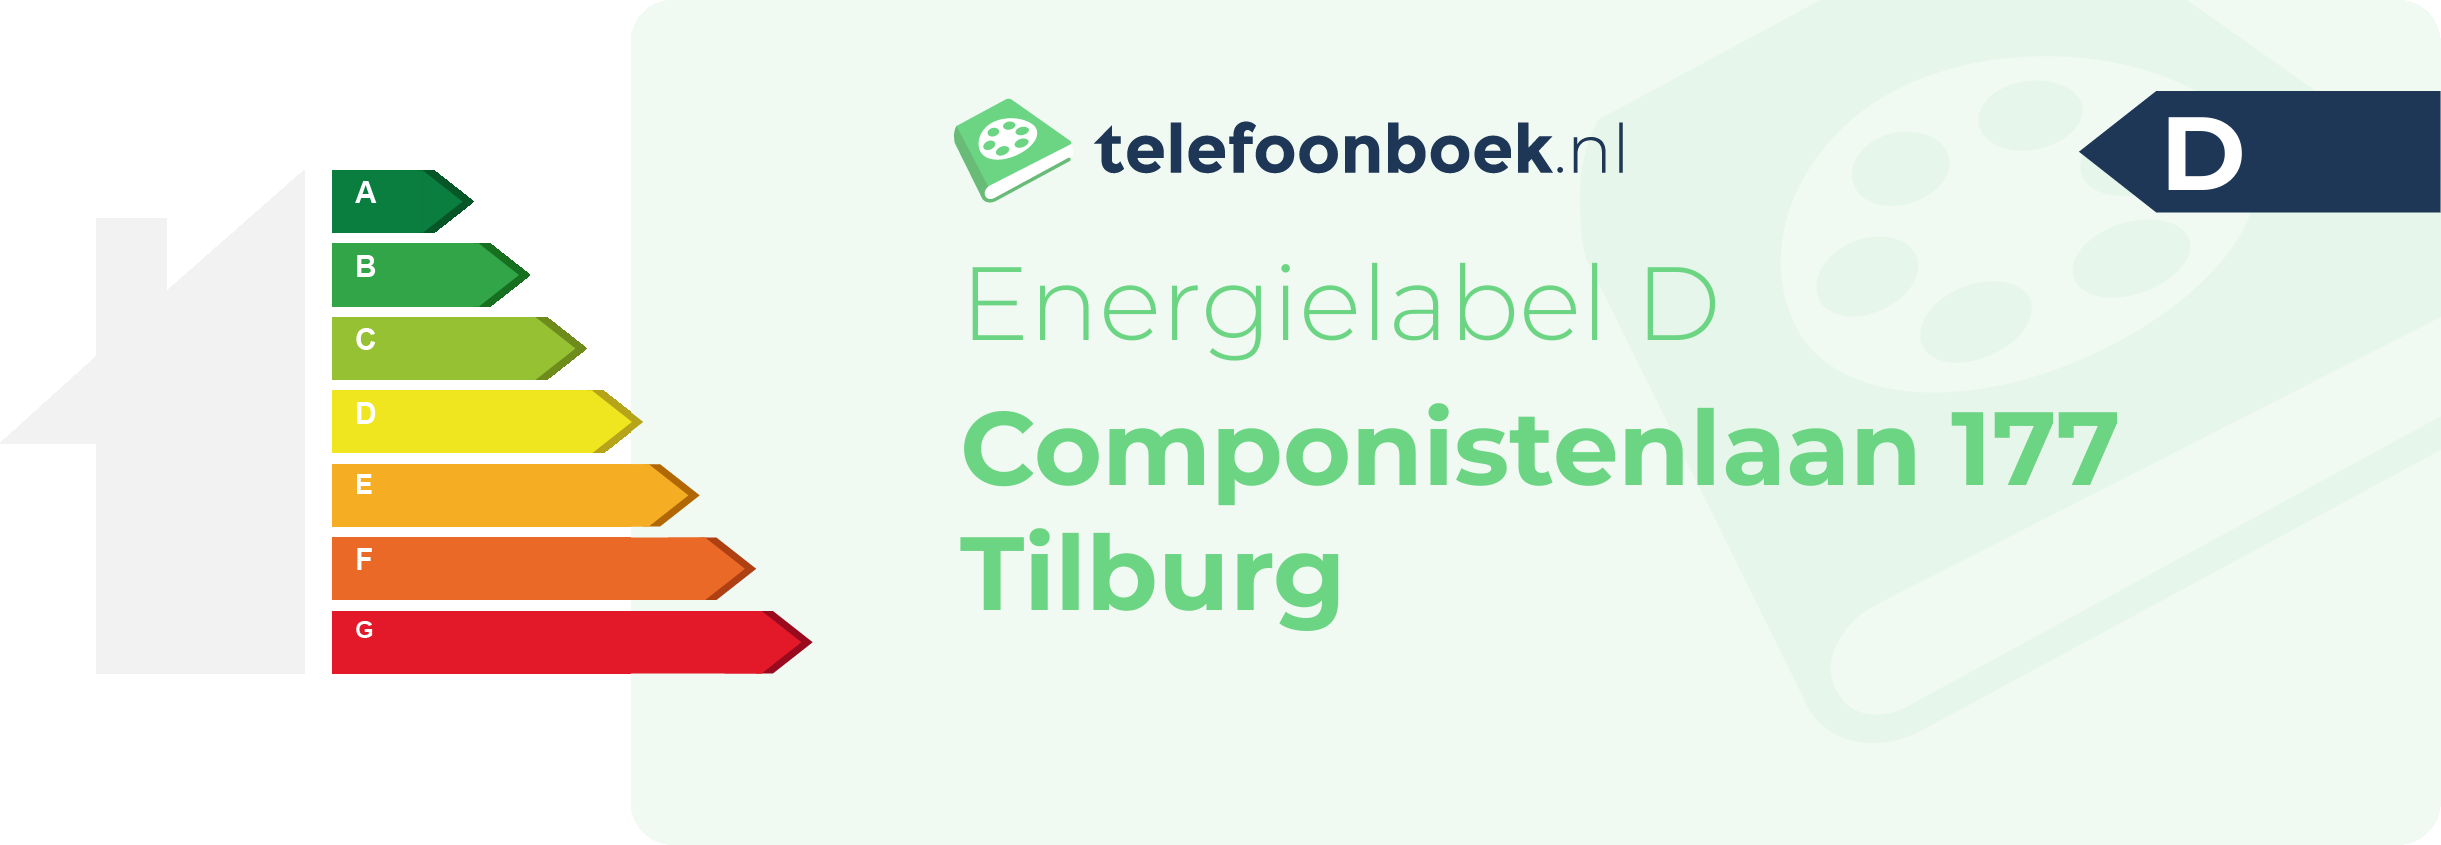 Energielabel Componistenlaan 177 Tilburg